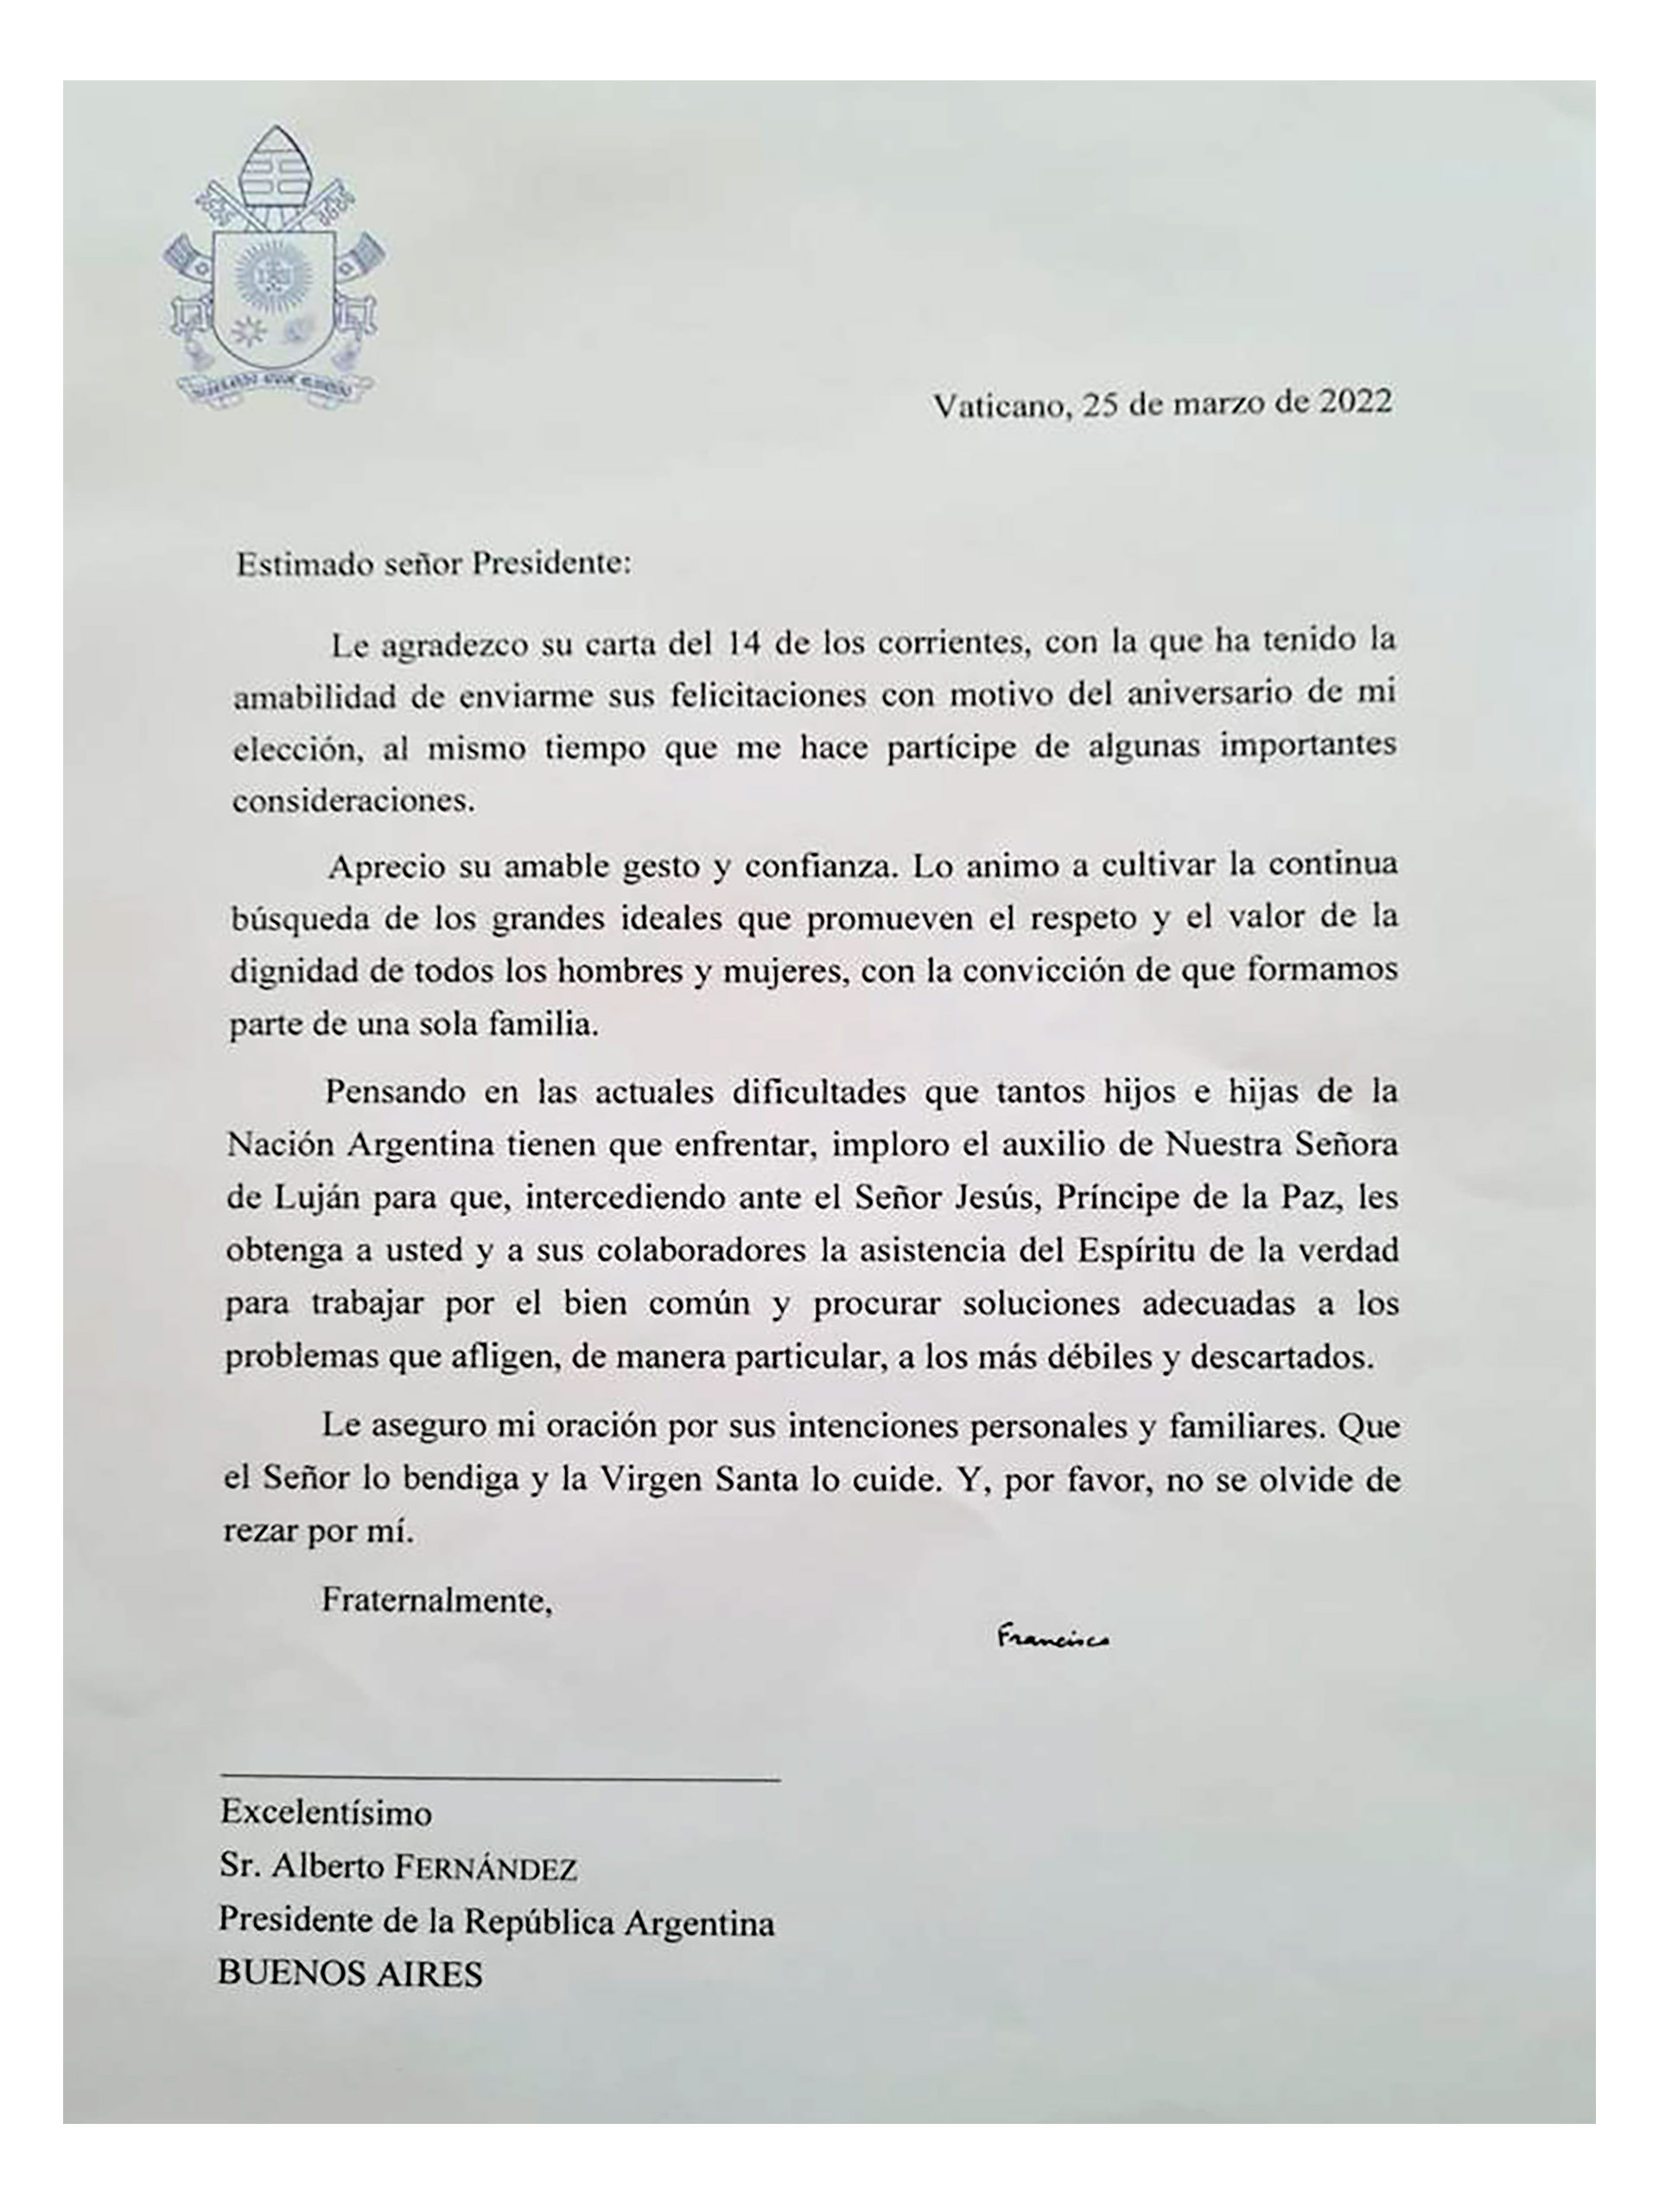 La carta que le envió el papa Francisco a Alberto Fernández